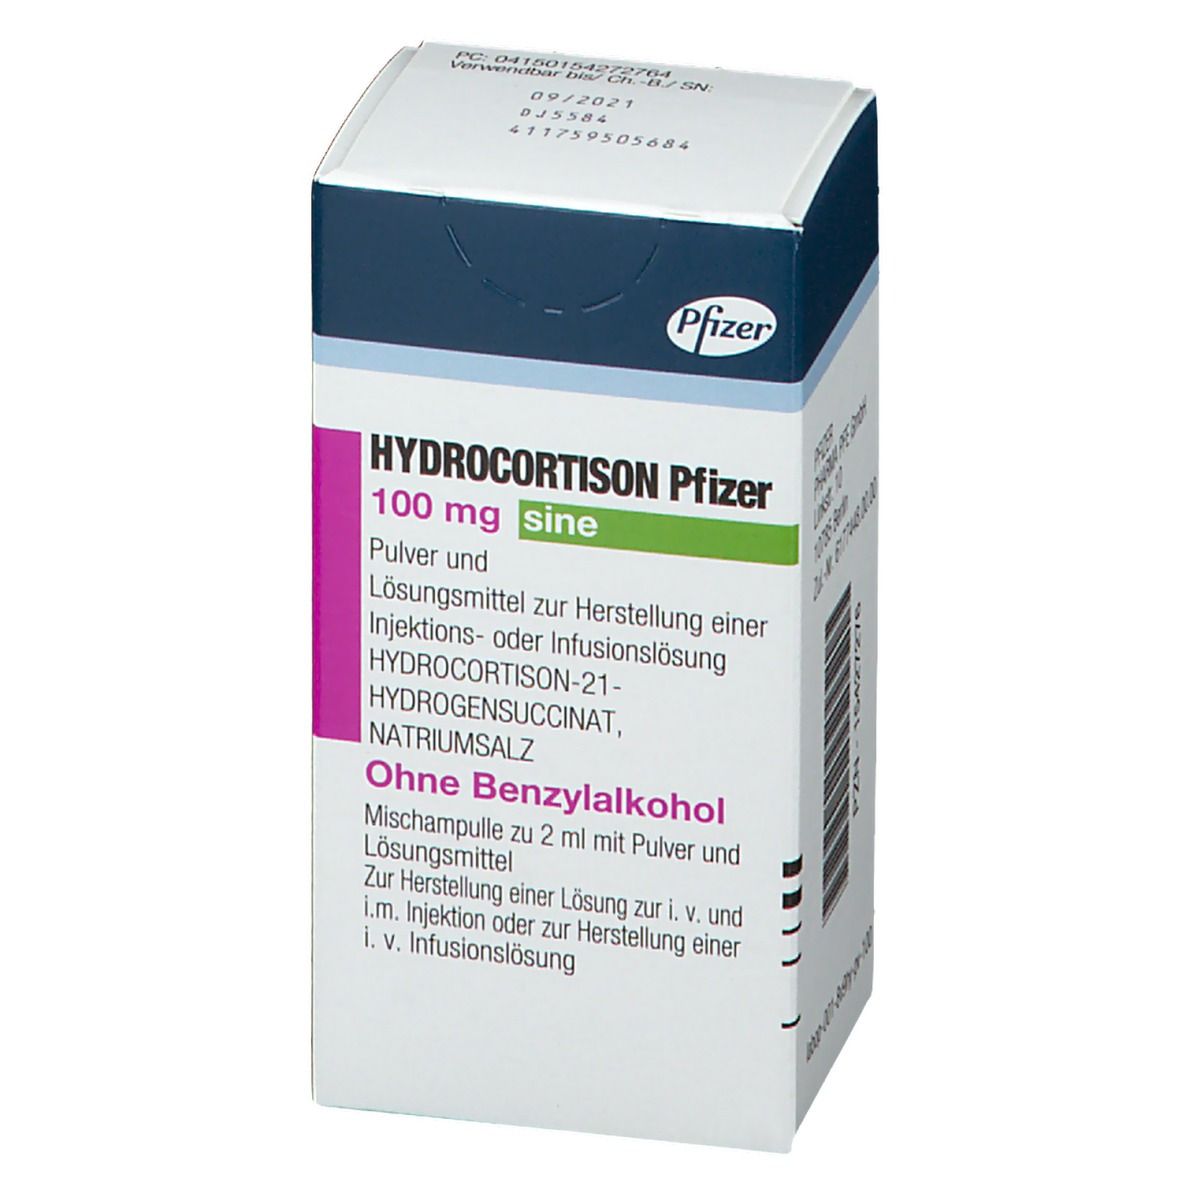 HYDROCORTISON Pfizer 100 mg sine